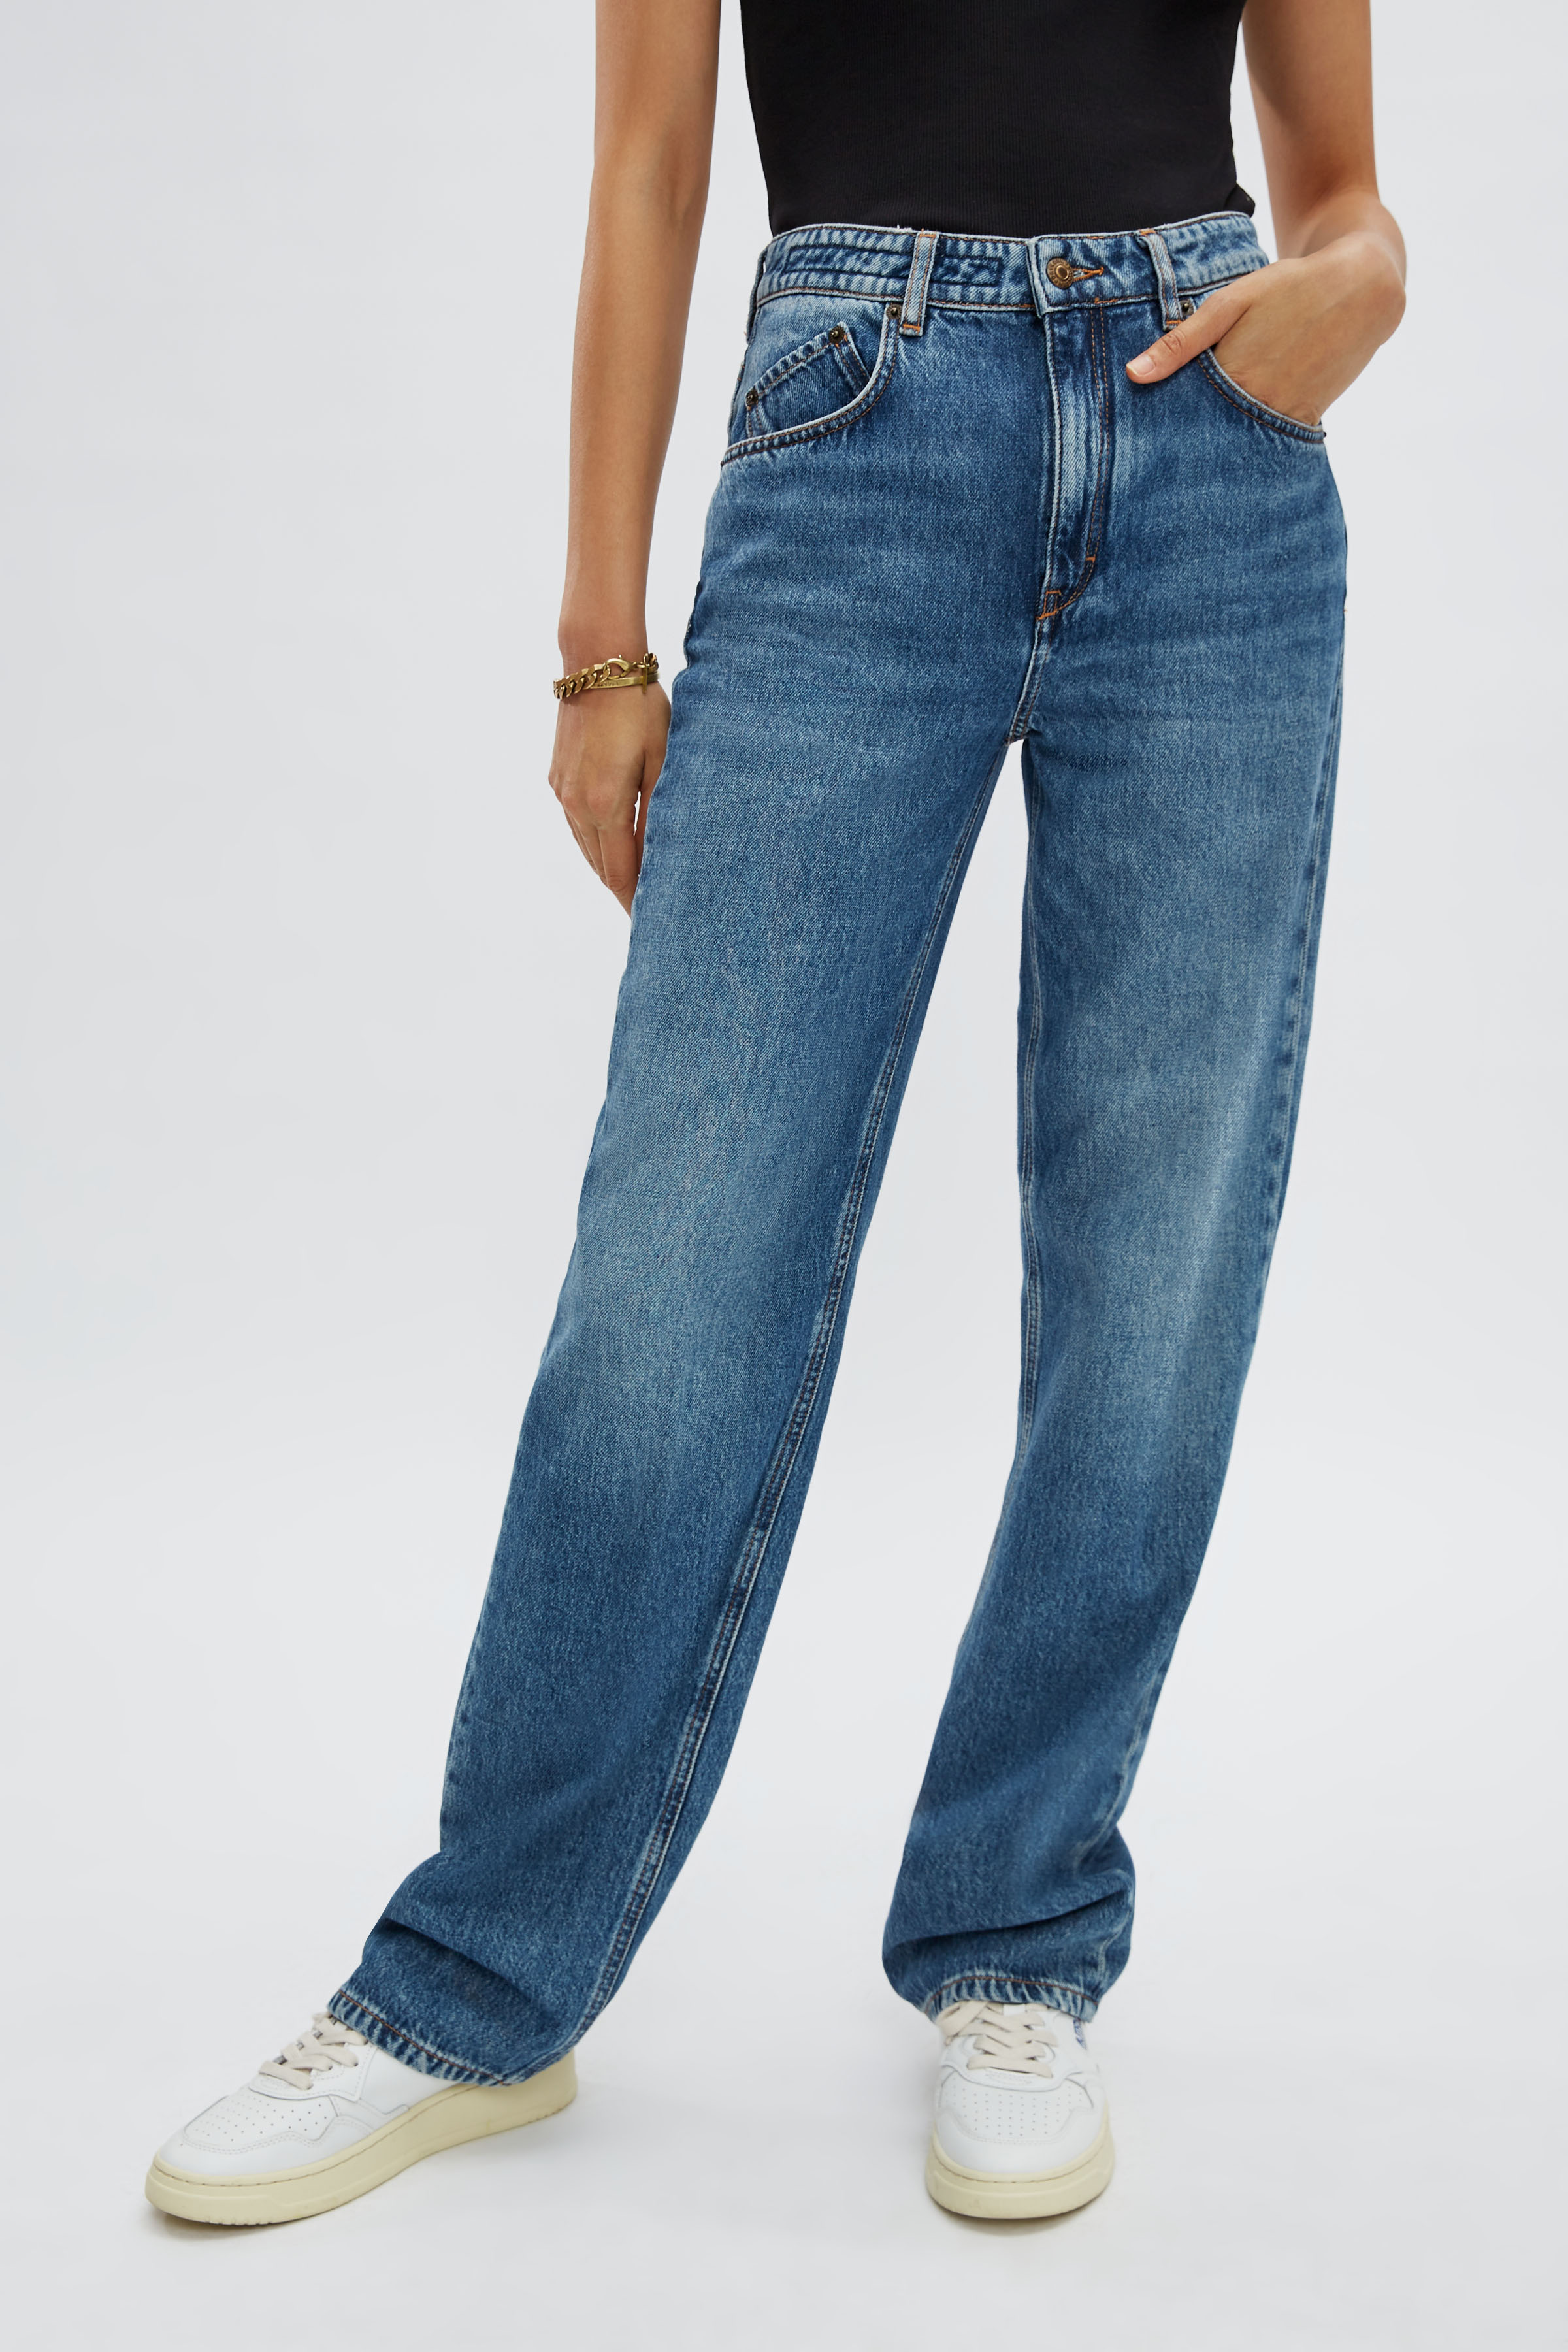 Onverenigbaar in plaats daarvan verband high waist jeans in authentiek denim